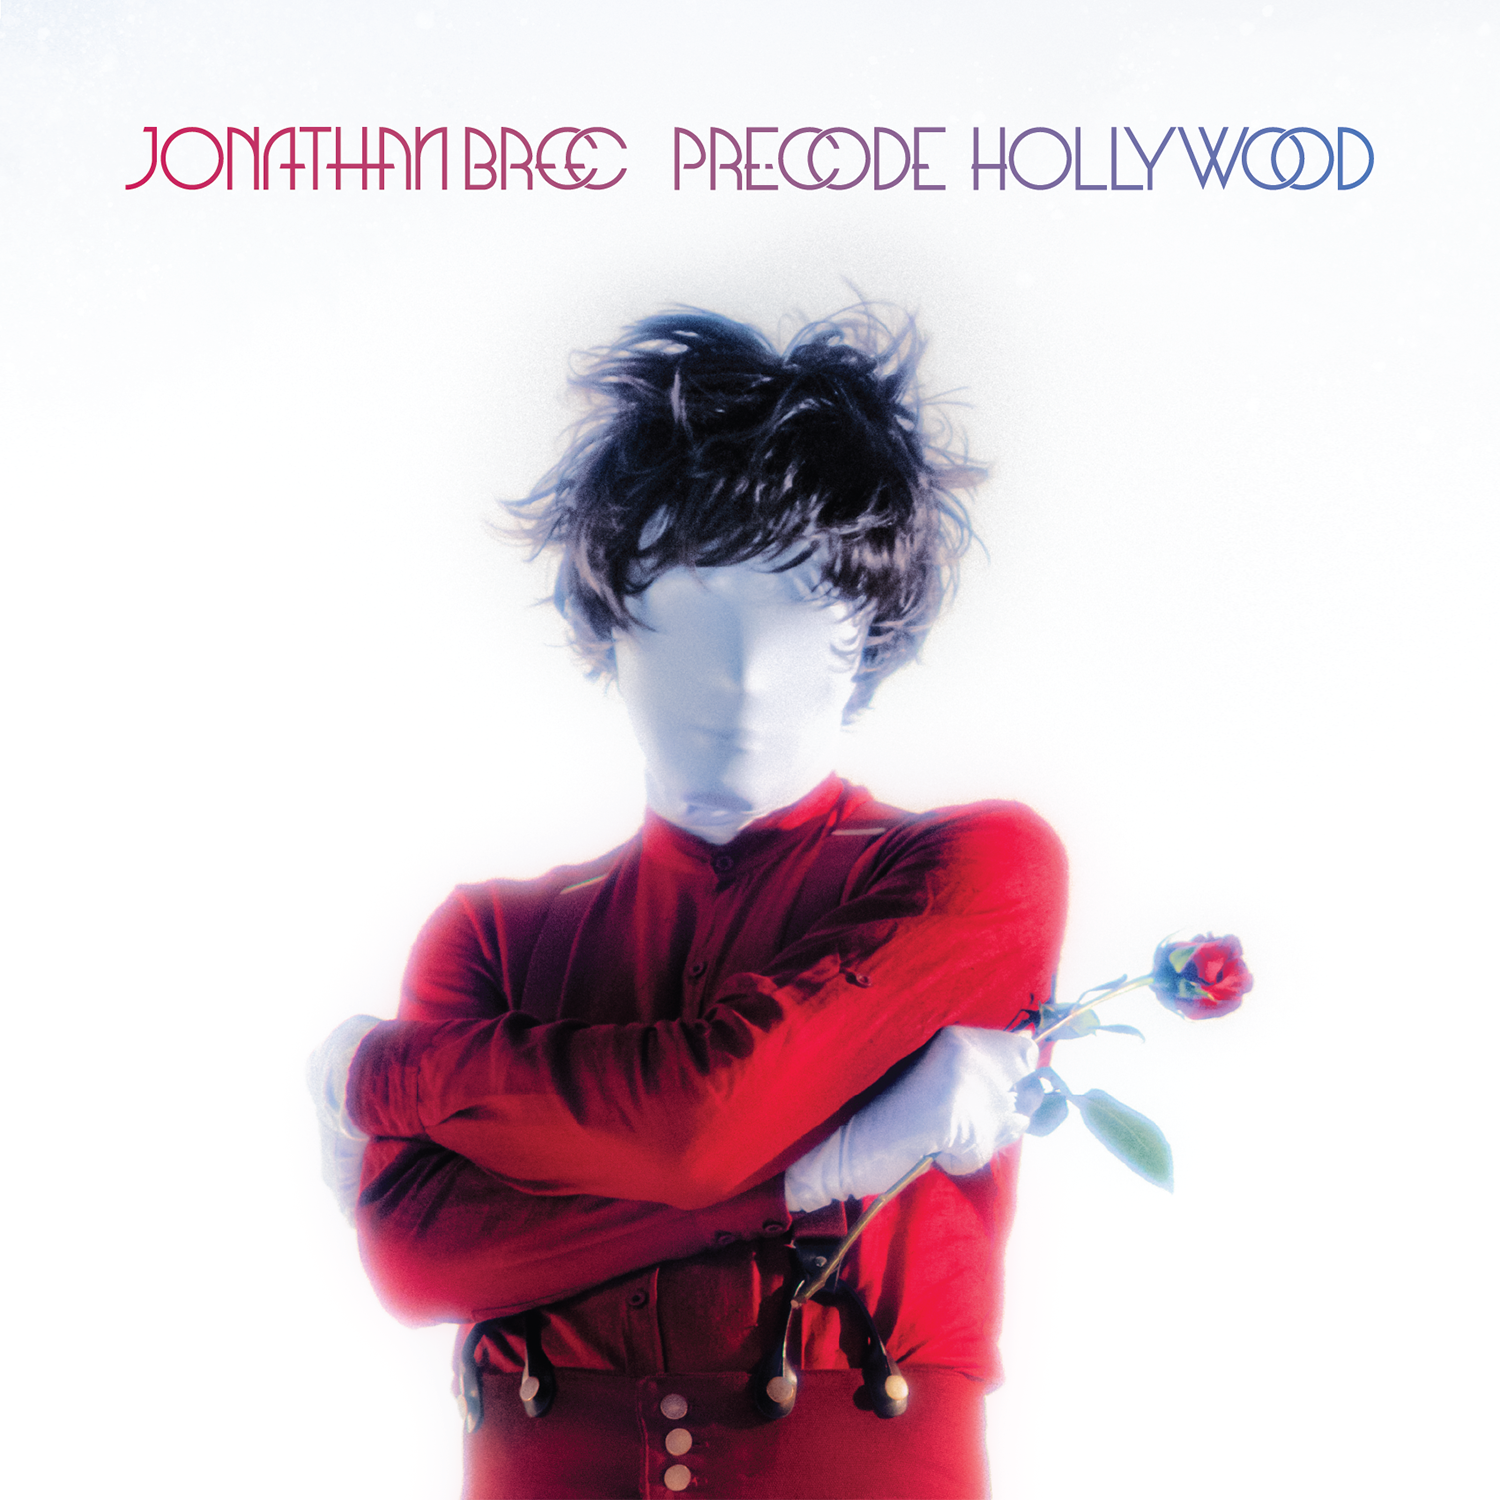 BREE, JONATHAN - PRECODE HOLLYWOOD - LP